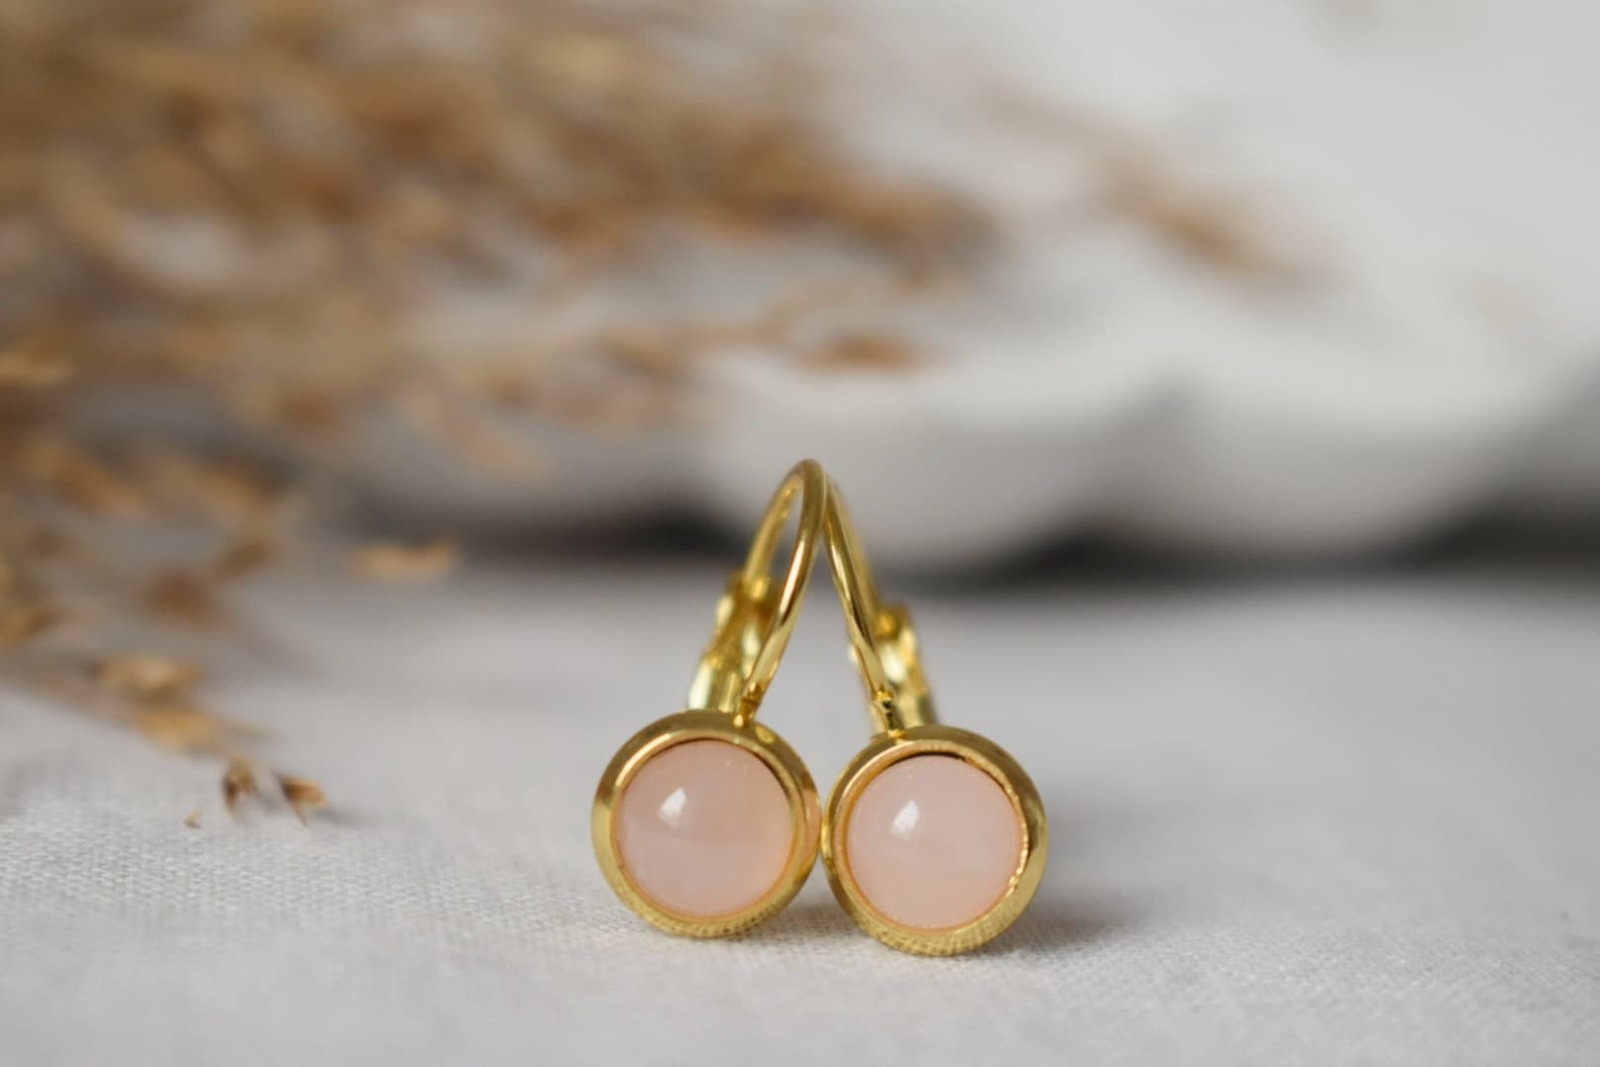 Mini rose quartz earrings, 6mm gold lever back earrings, Small gemstone earrings - $31.90